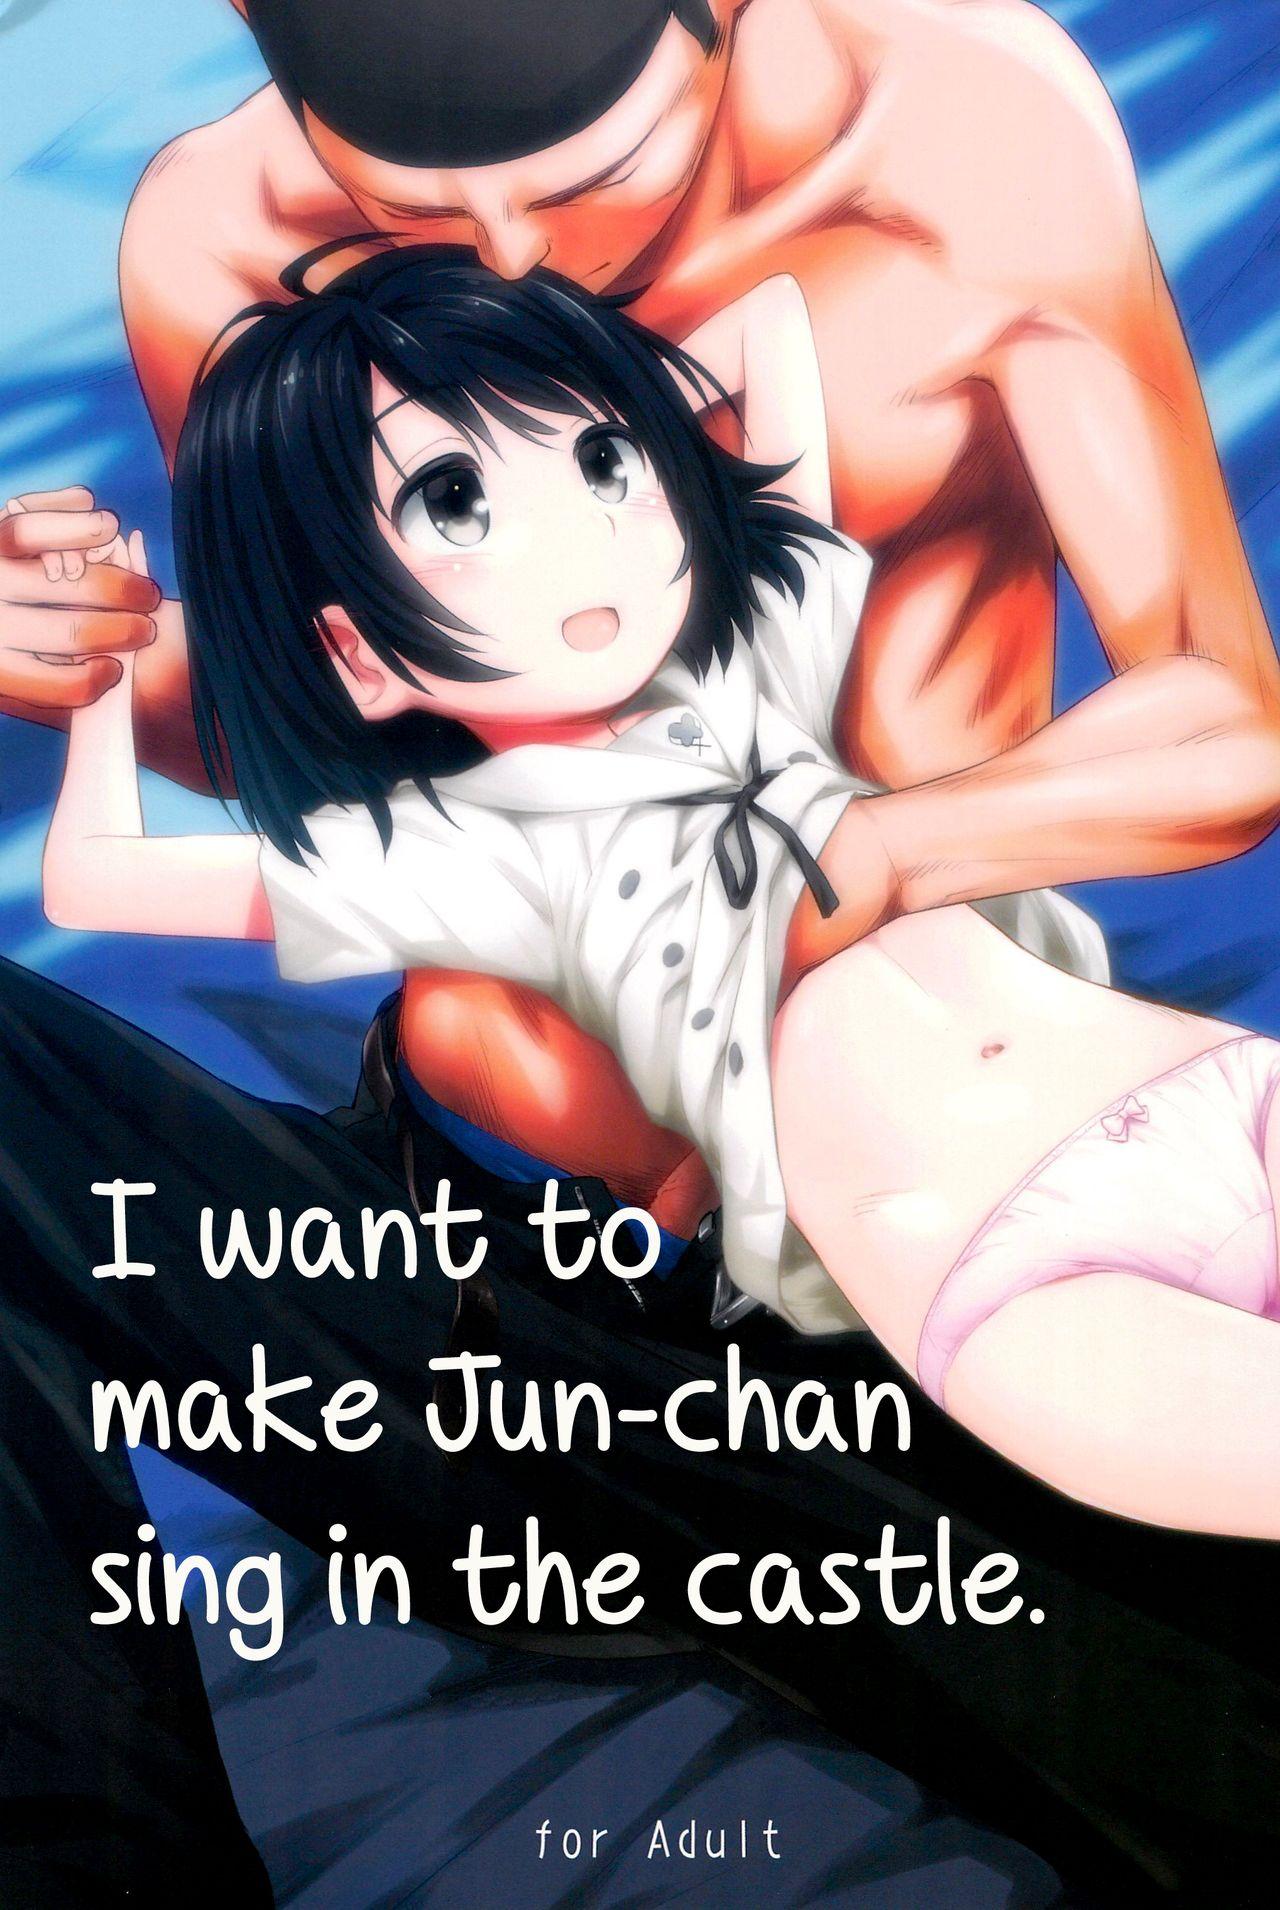 Junchan sing in the castle 1